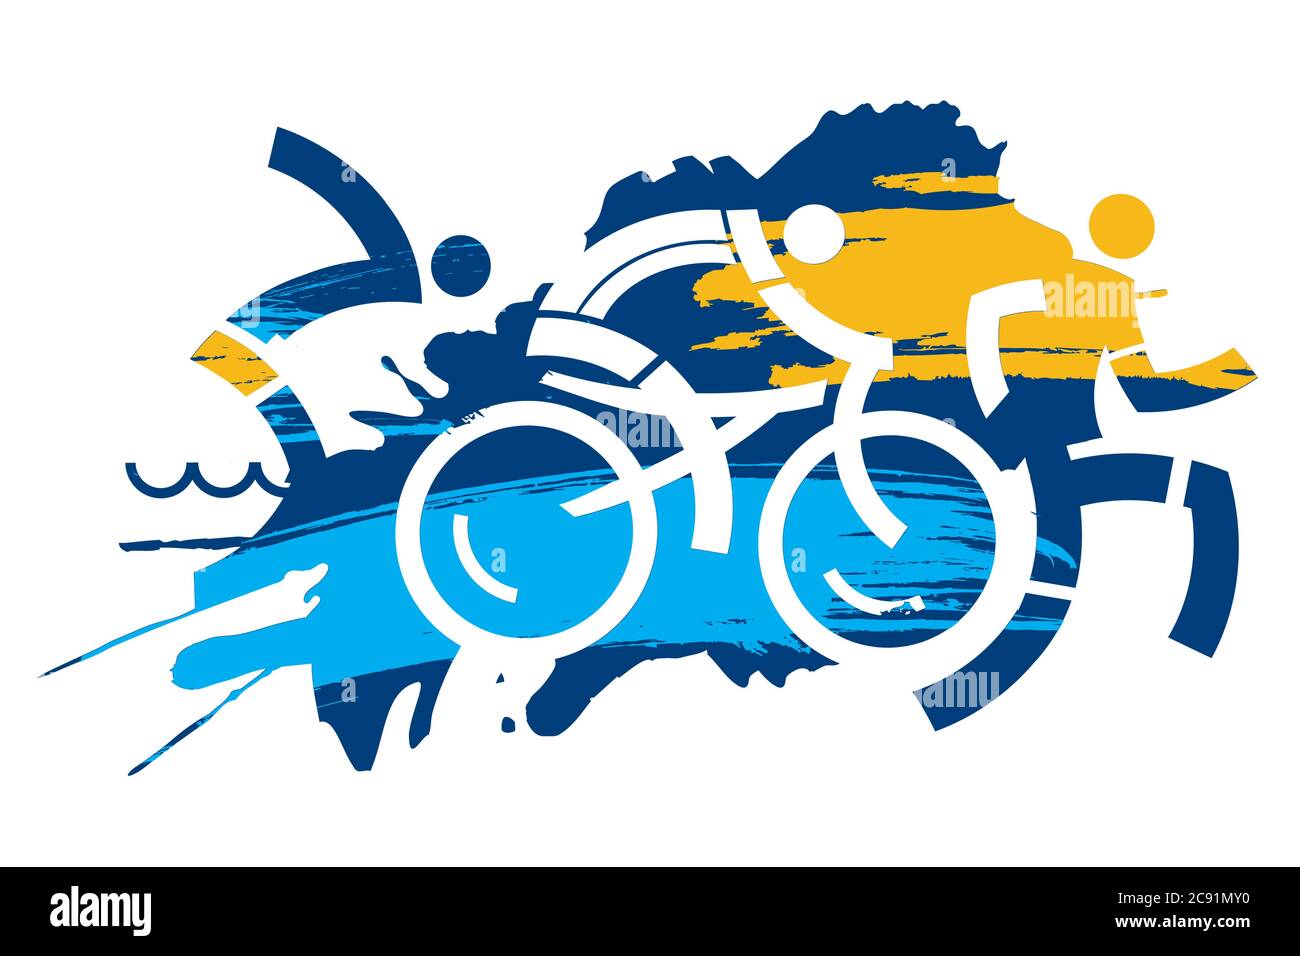 Triathlon-Rennen, Teilnehmer. Drei Triathlon-Athleten Symbole auf dem Grunge-Hintergrund. Vektor verfügbar. Stock Vektor